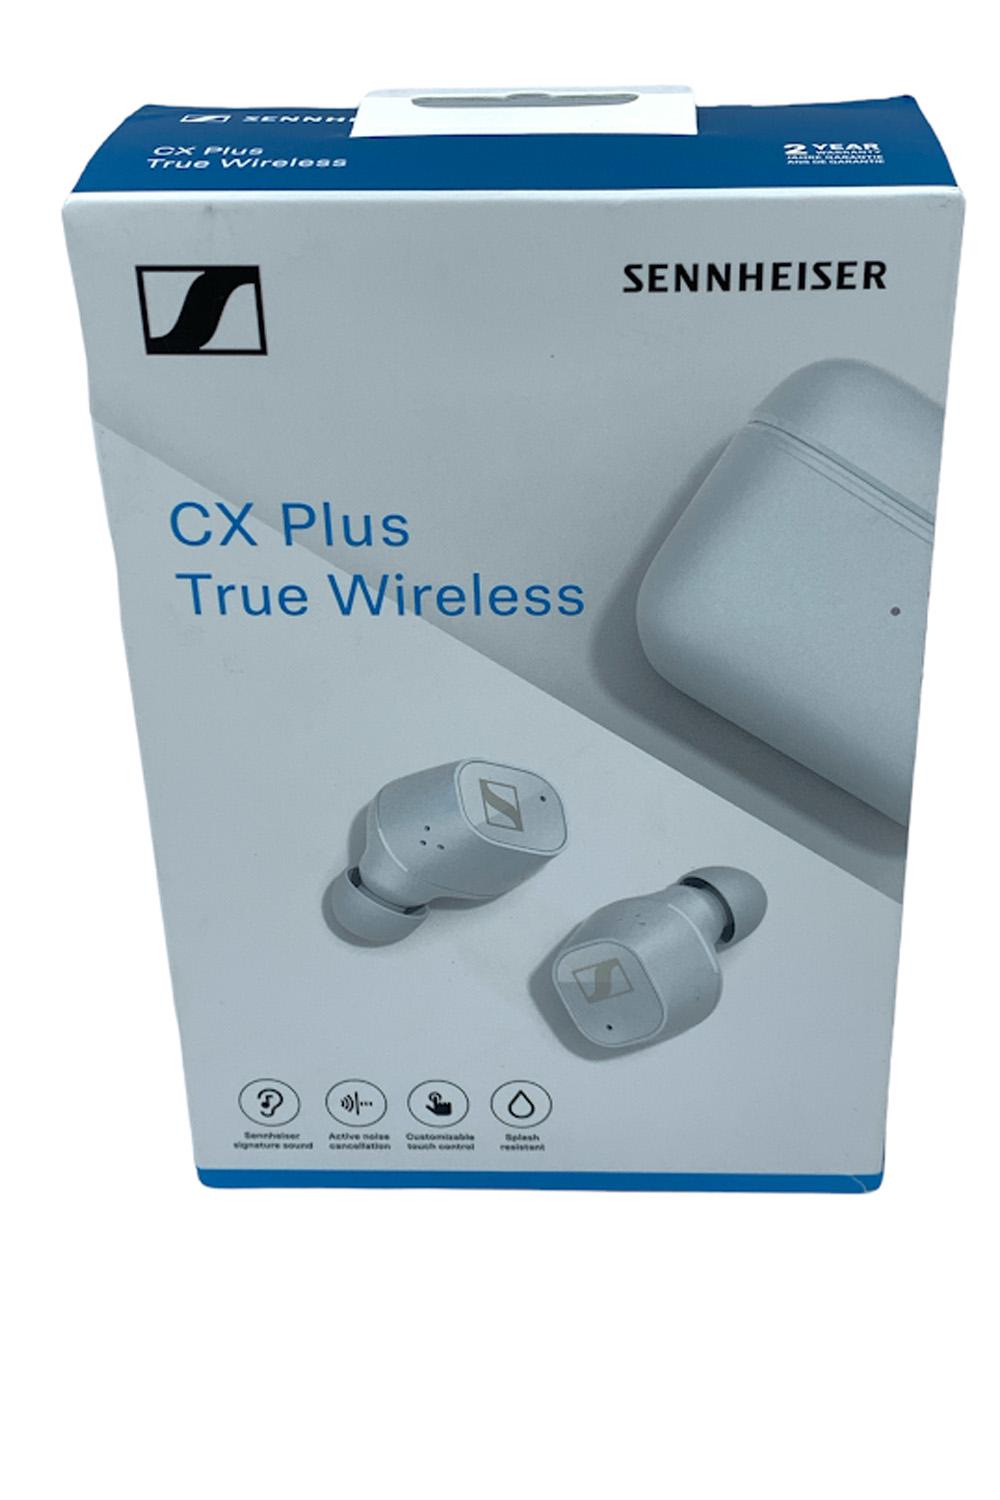 Sennheiser CX Plus True Wireless CXPLUSTW1 Earbuds White   Jender